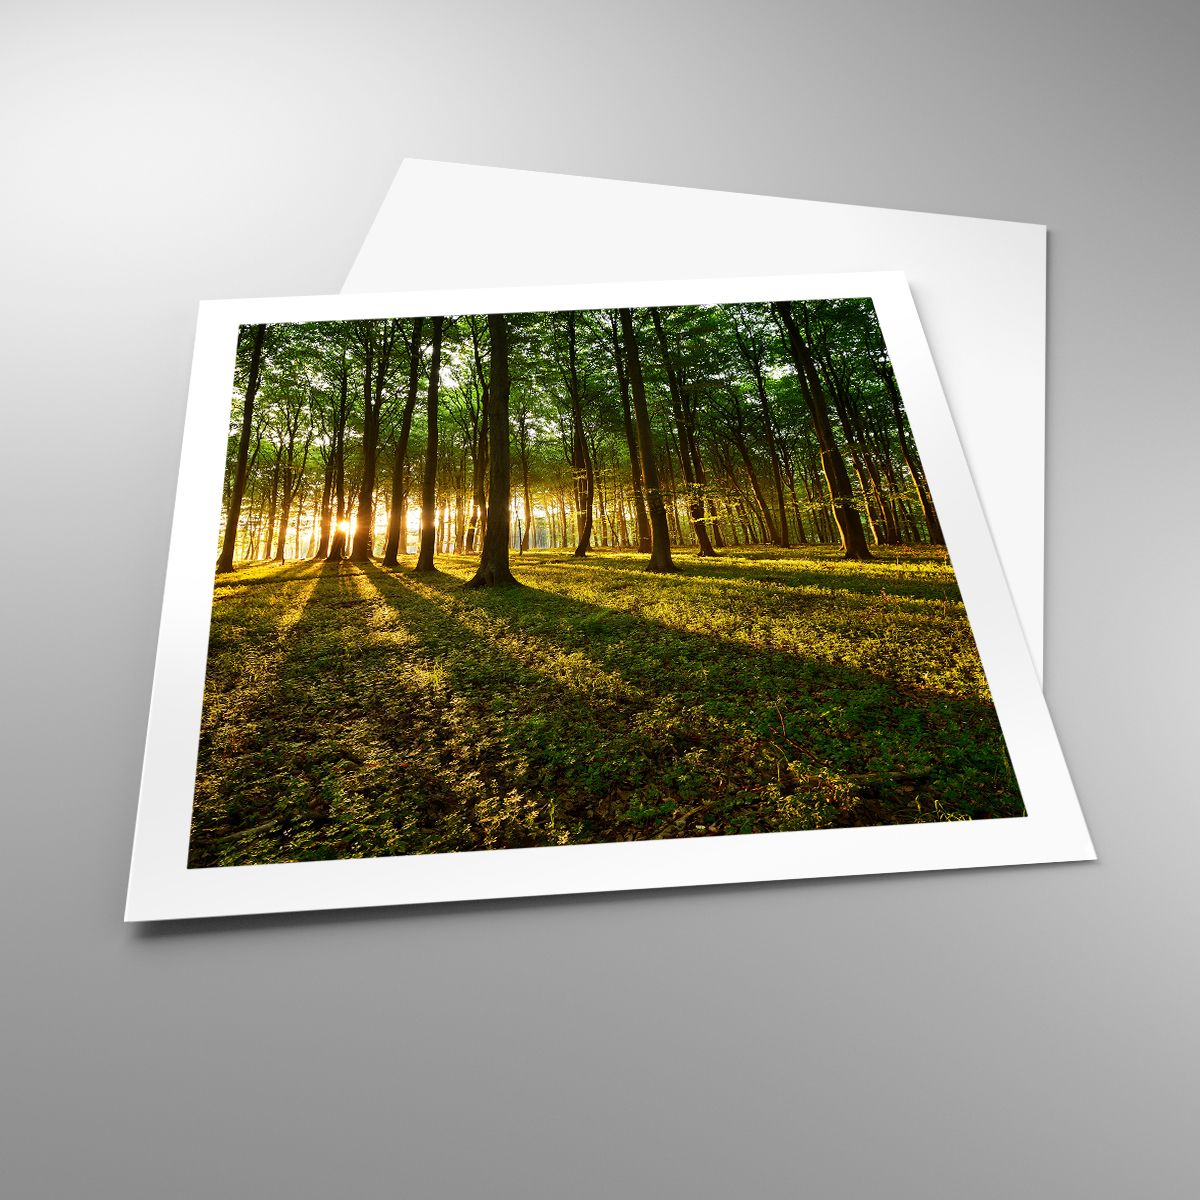 Poster Landschaft, Poster Wald, Poster Natur, Poster Bäume, Poster Sonnenstrahlen